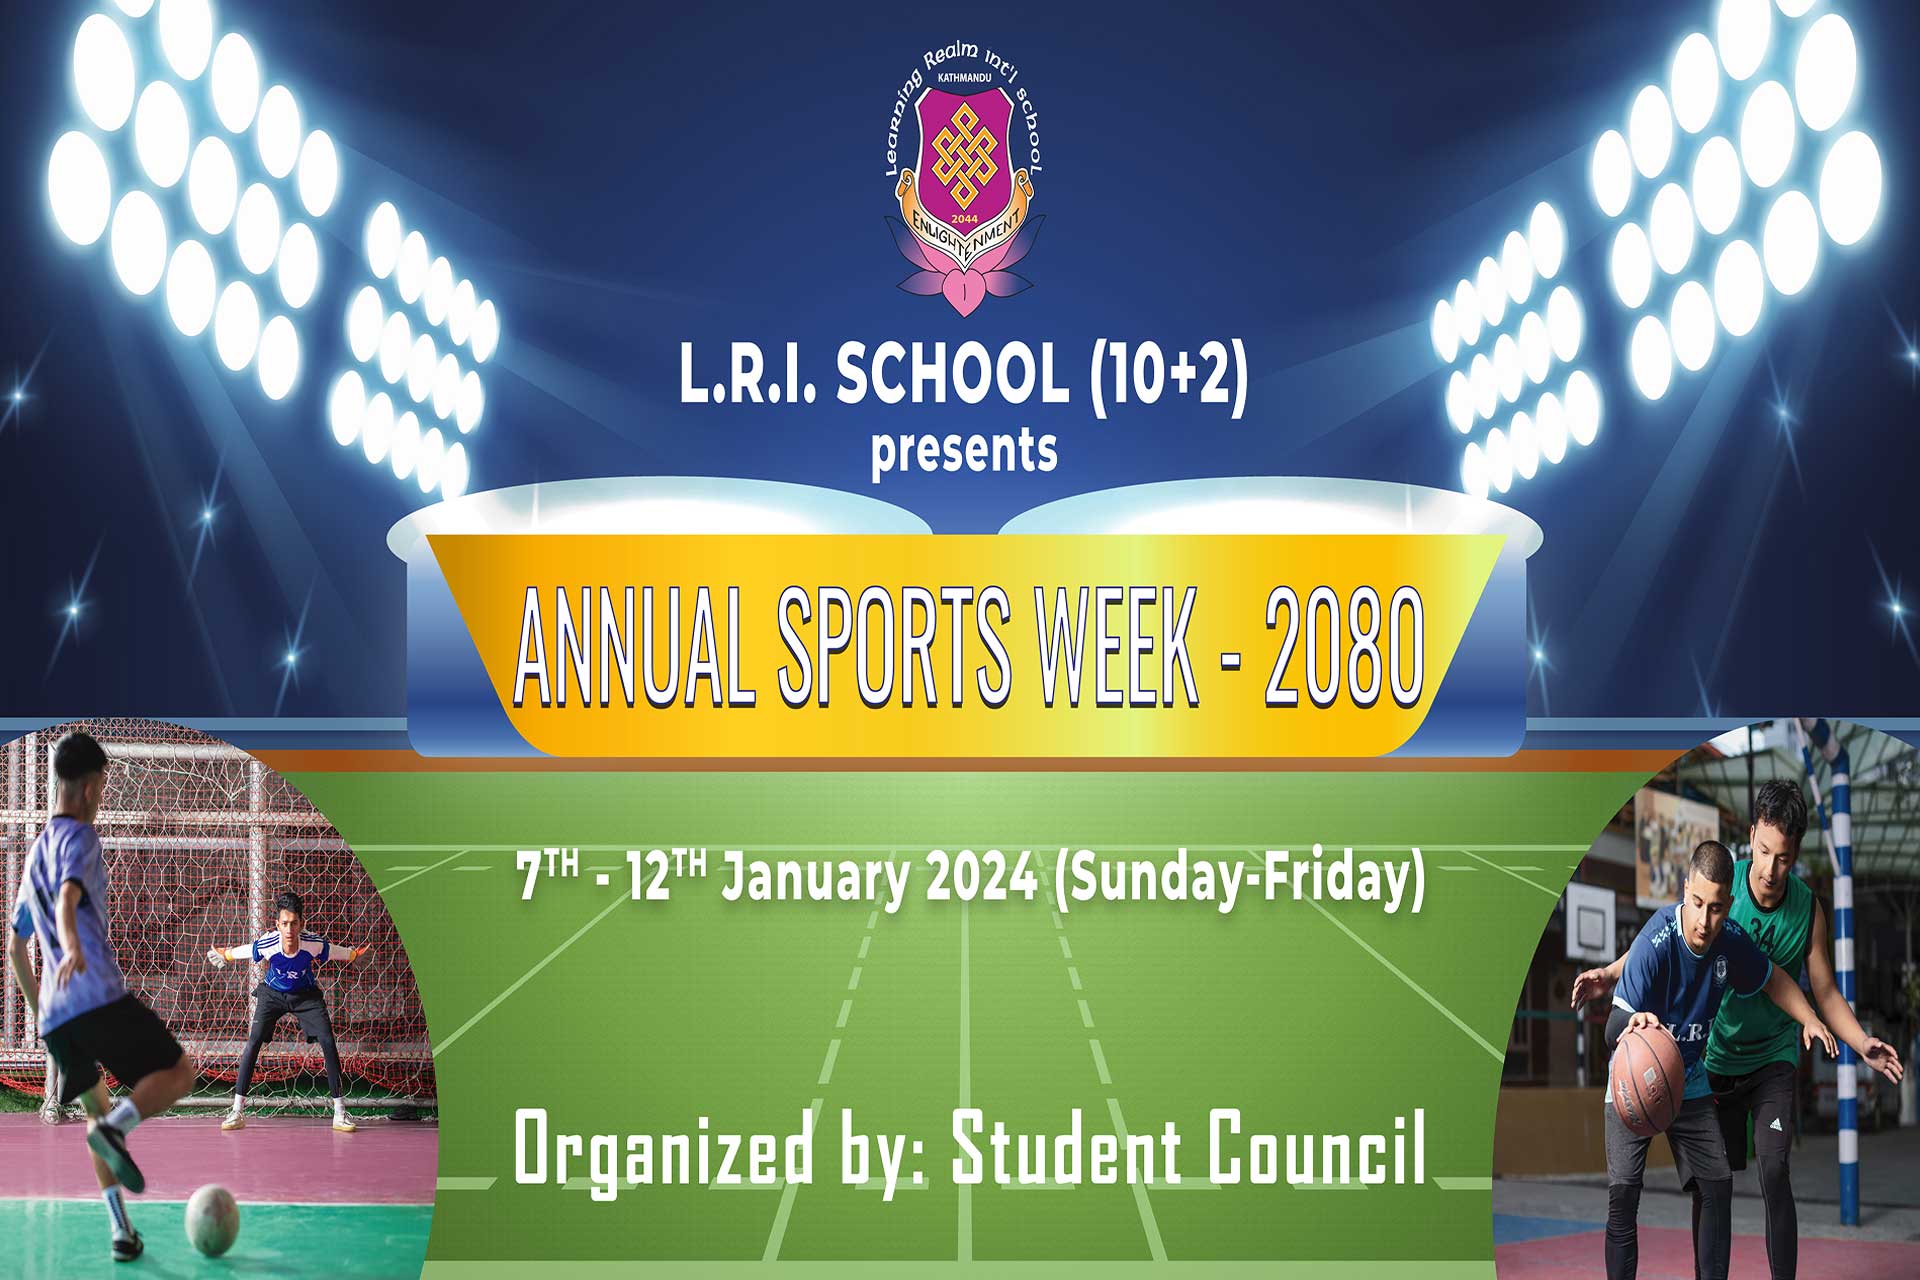 Welcome to LRI +2 Annual Sports Week - 2080